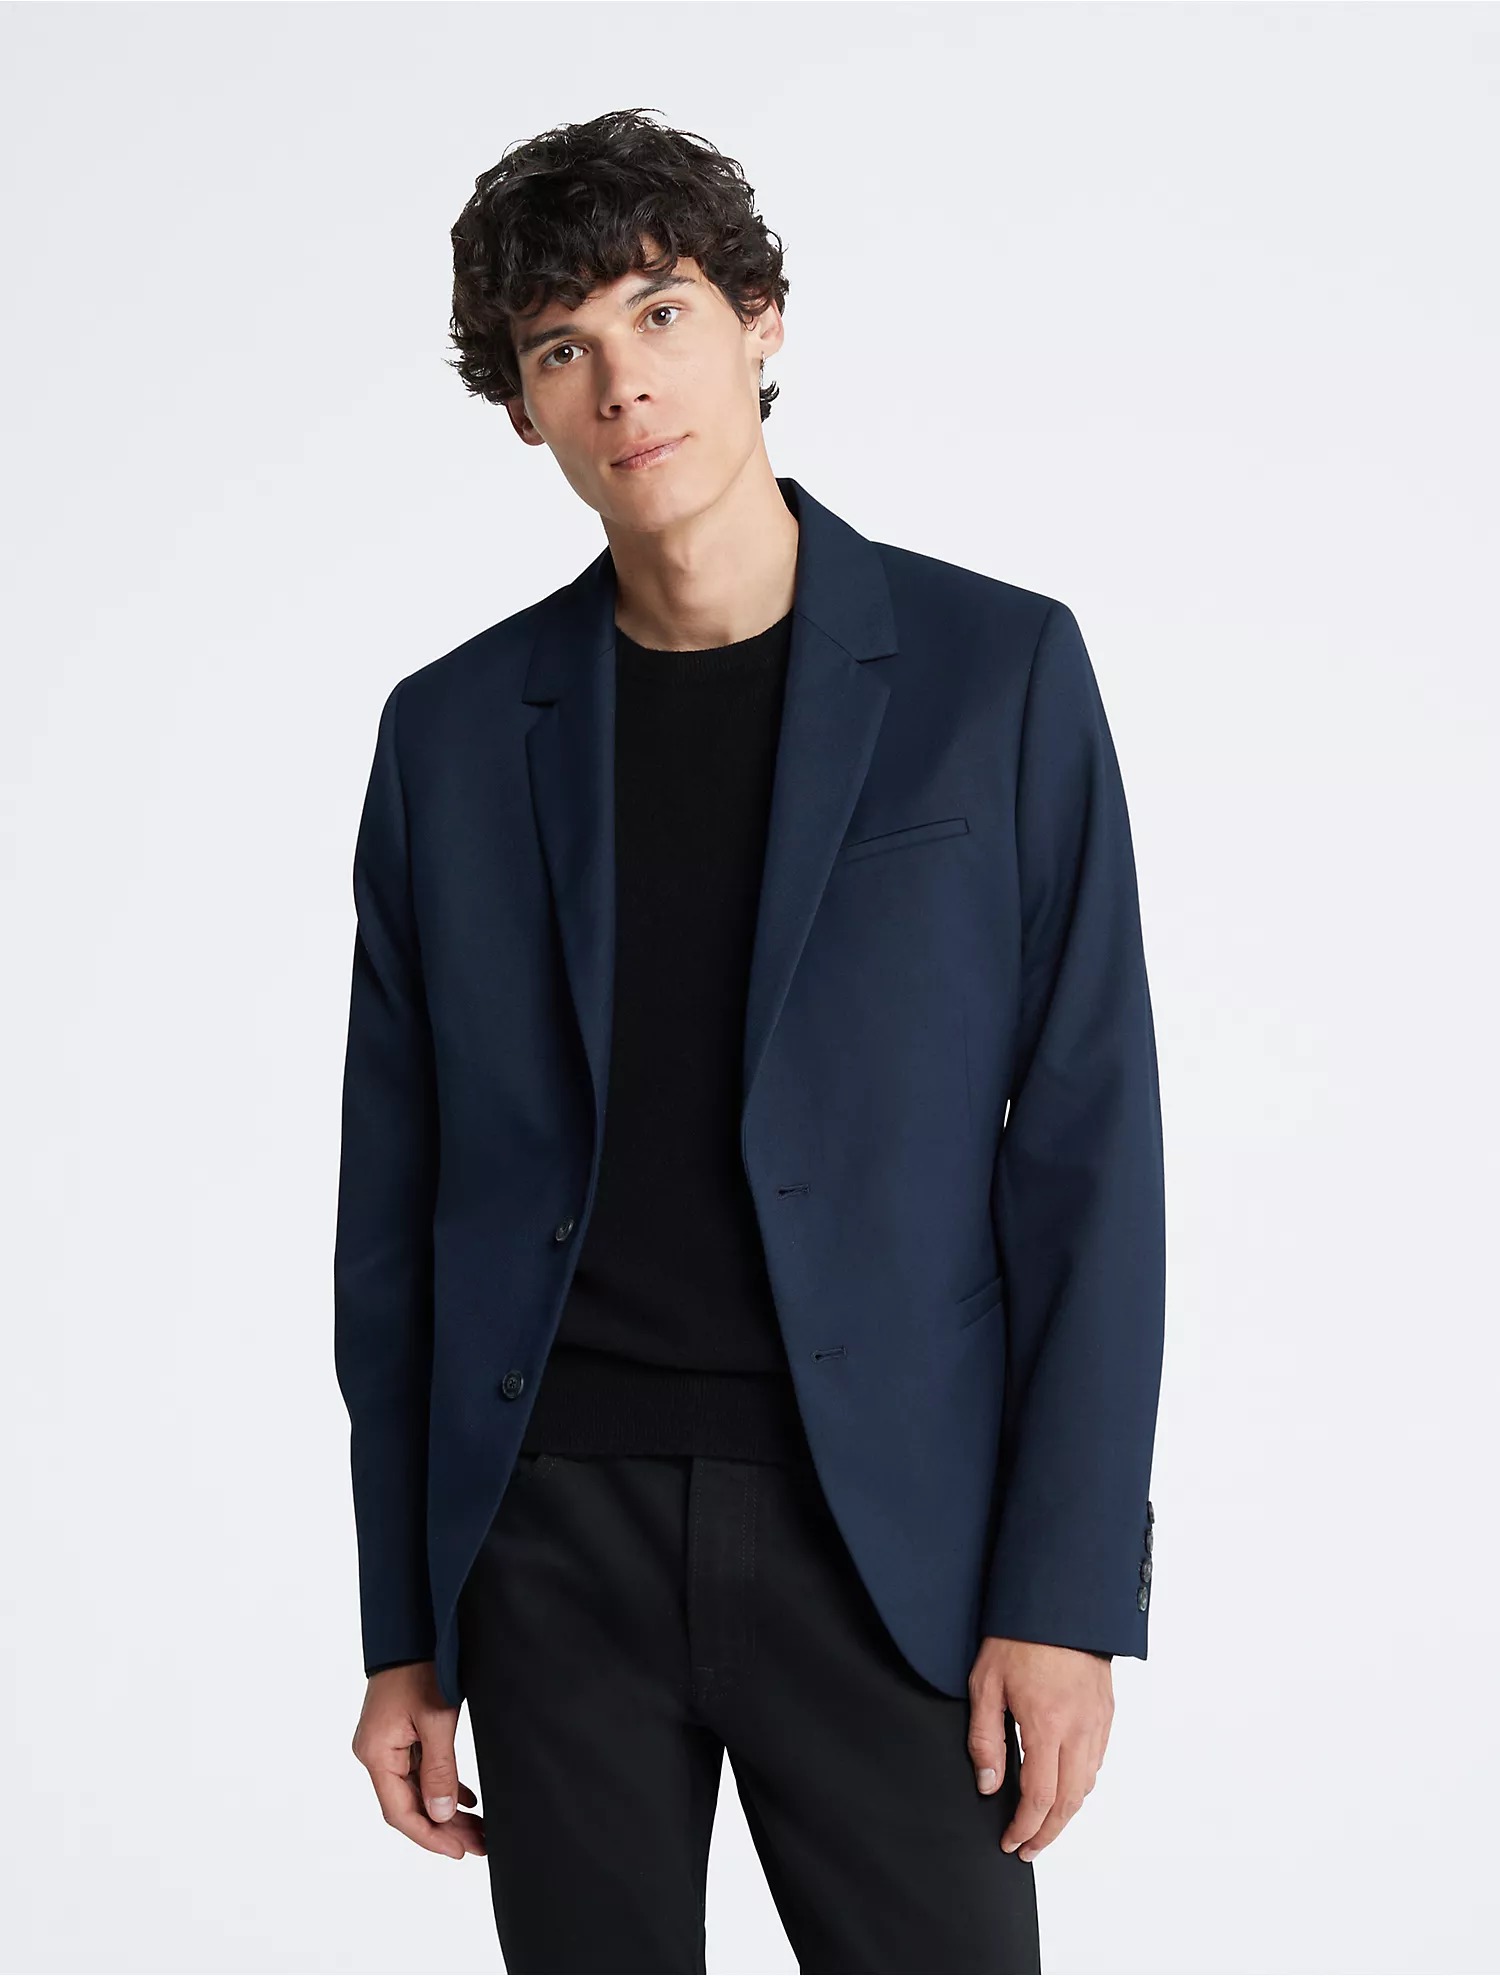 Пиджак Calvin Klein Refined Twill Slim, темно-синий пиджак облегающего кроя zara рыжевато коричневый